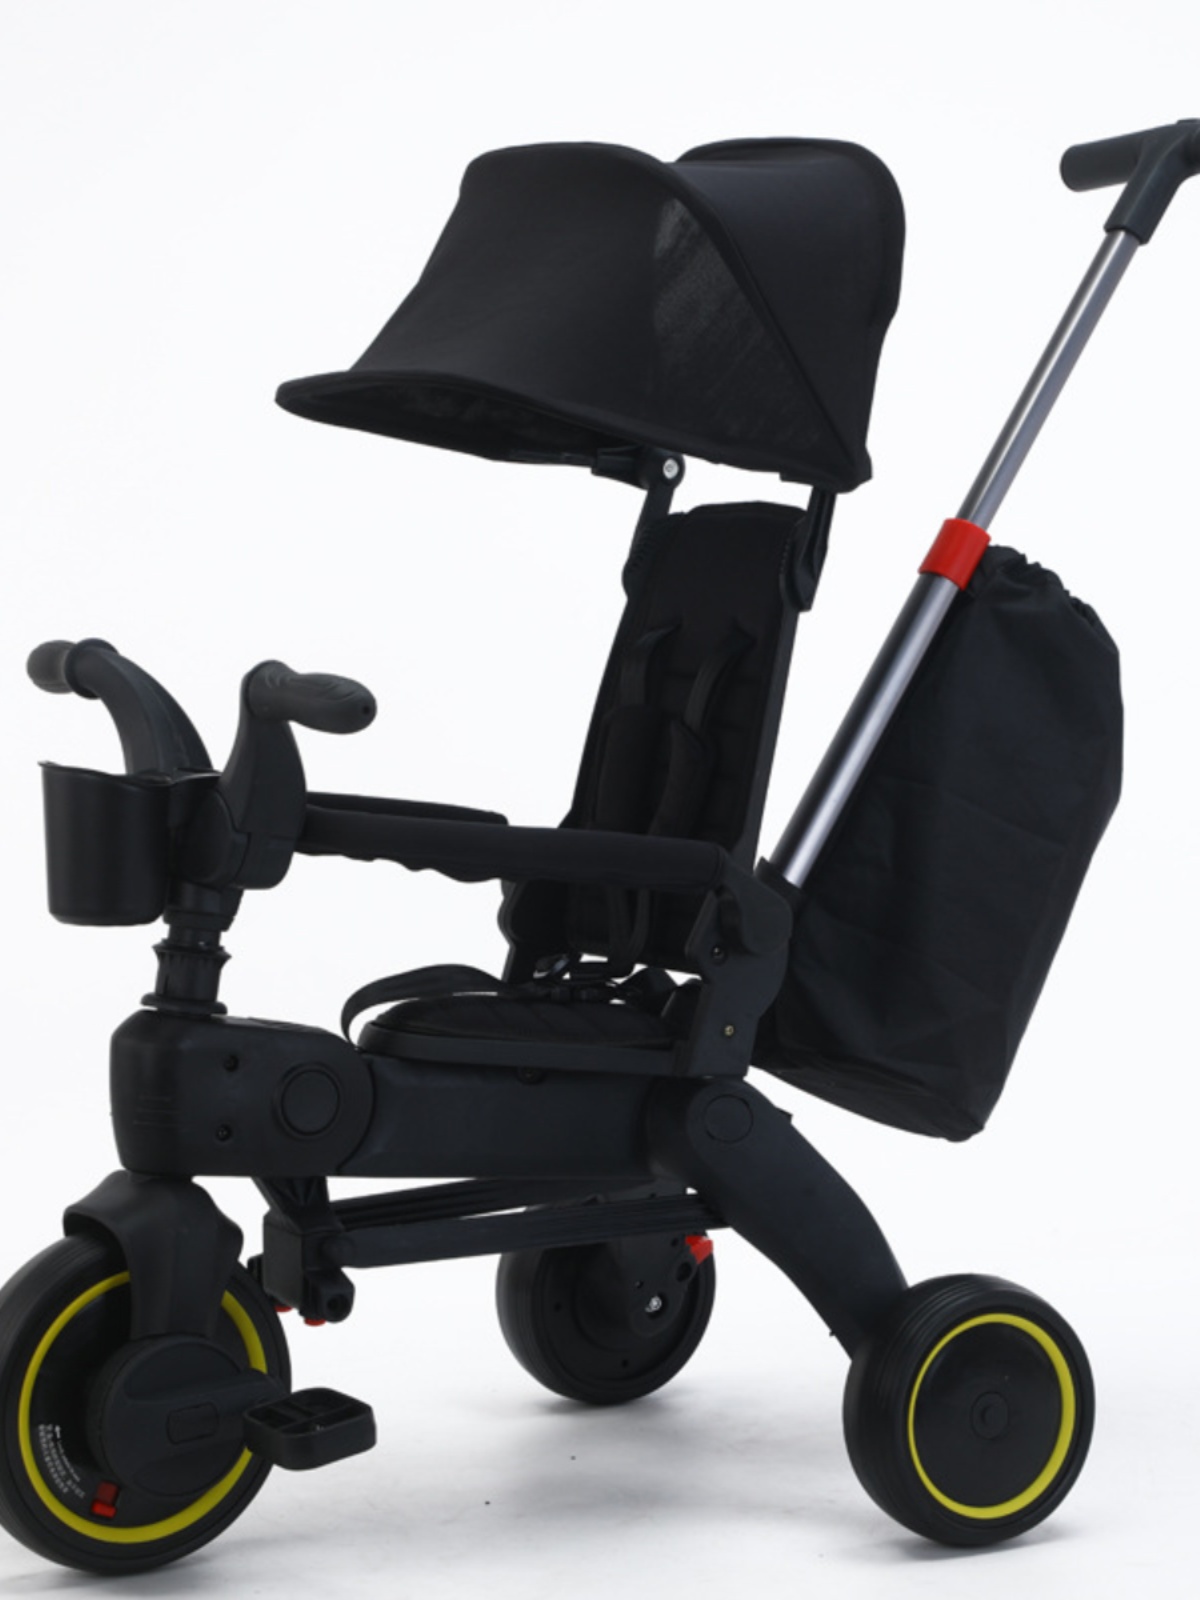 新品新款儿童三轮车15岁可折叠溜娃婴儿手推车轻便宝宝脚踏车